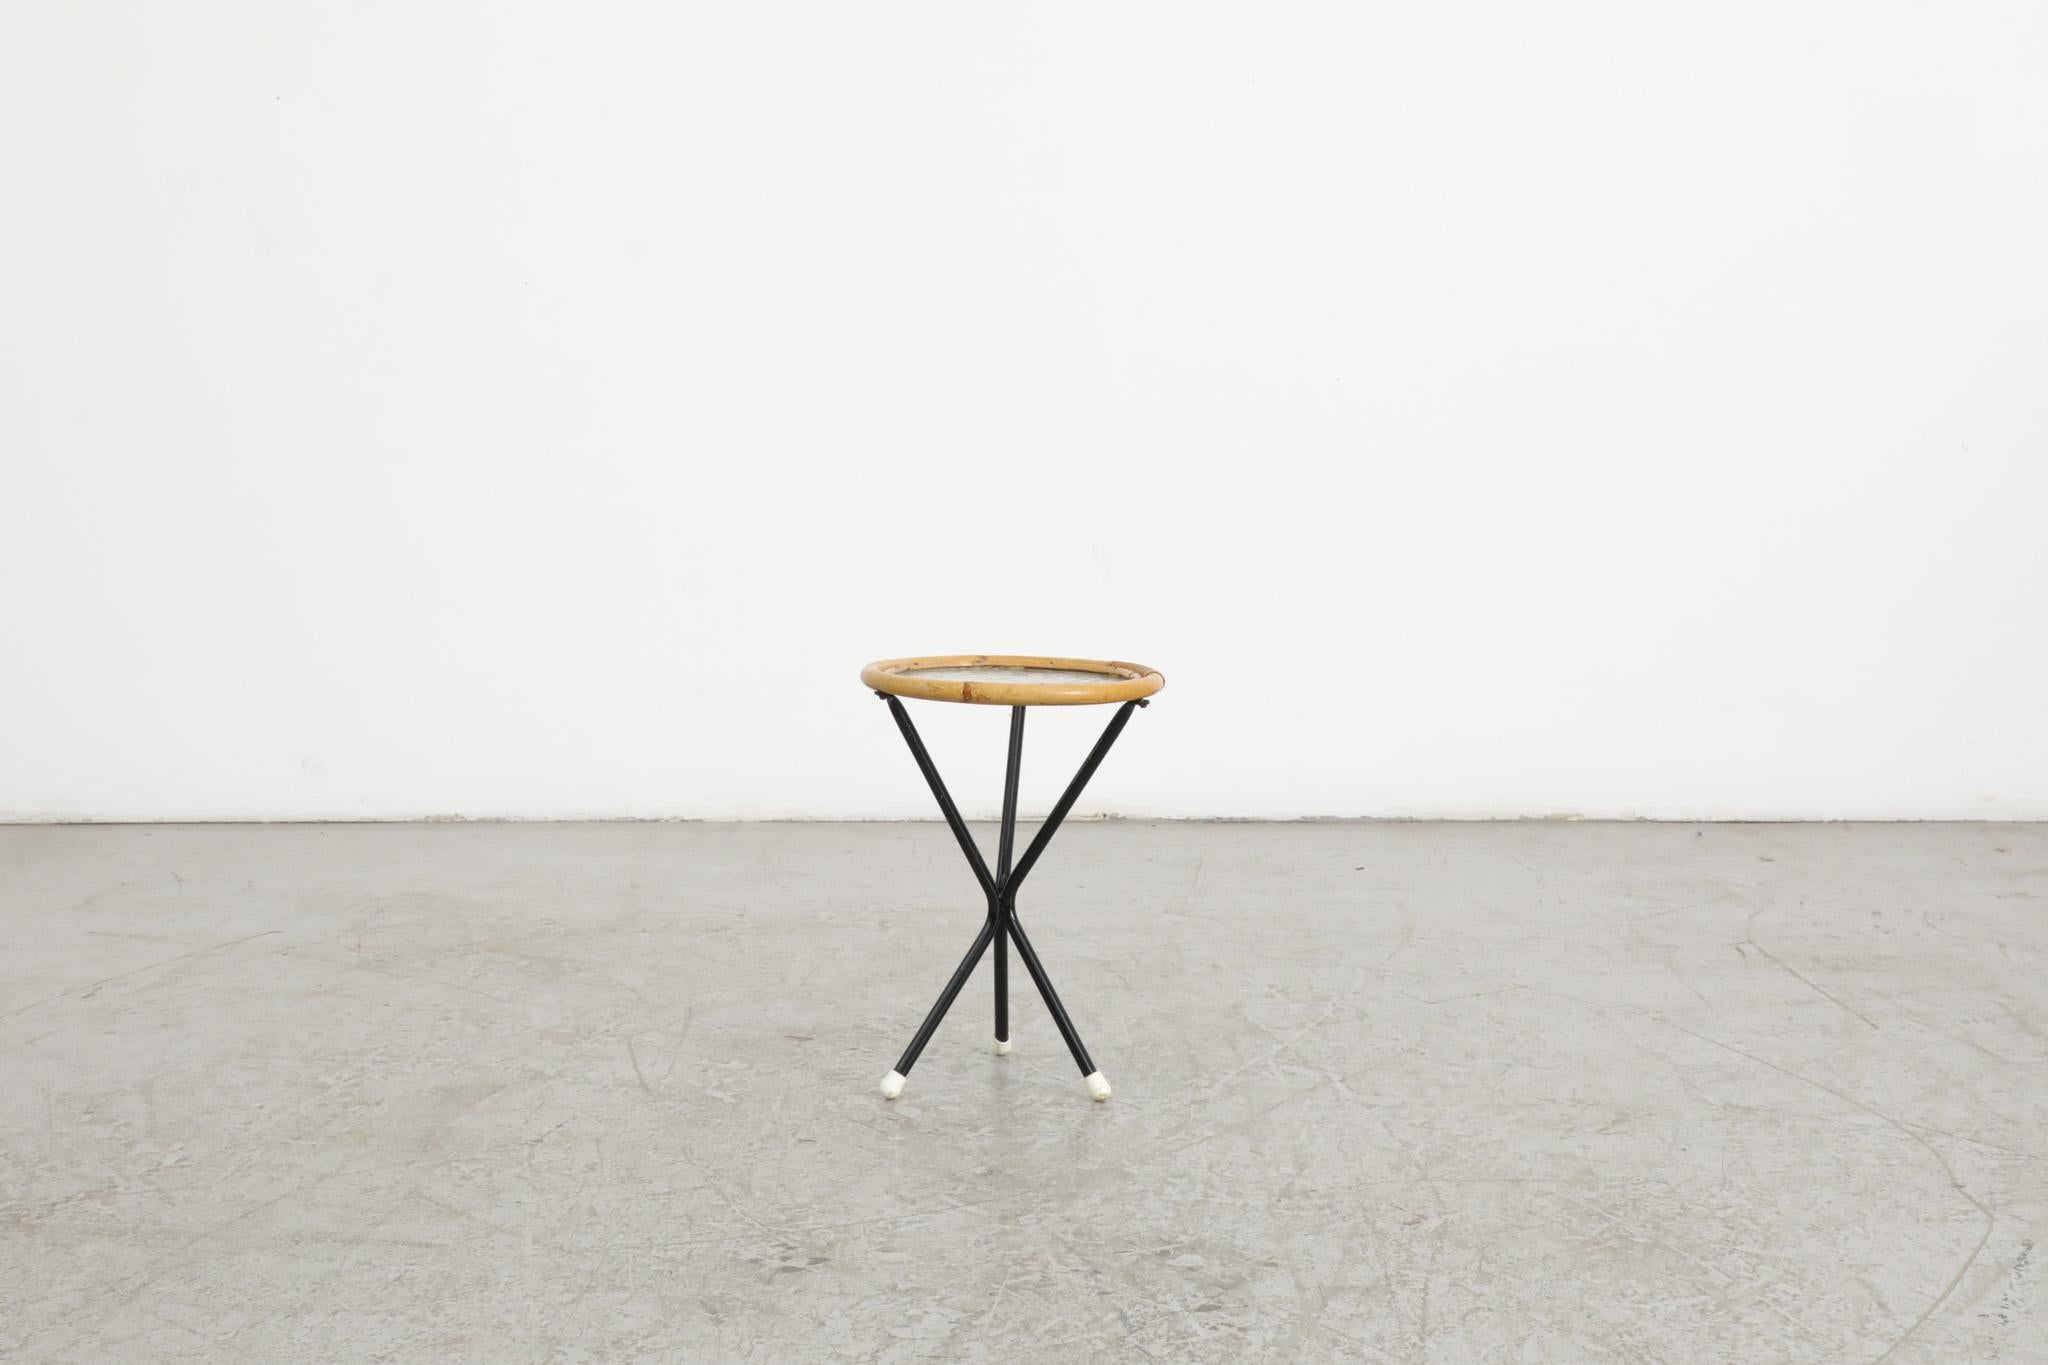 Rohe Noordwolde mini table d'appoint en bambou avec verre texturé et pieds en métal émaillé noir. En état d'origine, avec des pieds en plastique blanc et quelques usures dues à l'âge et à l'utilisation. 